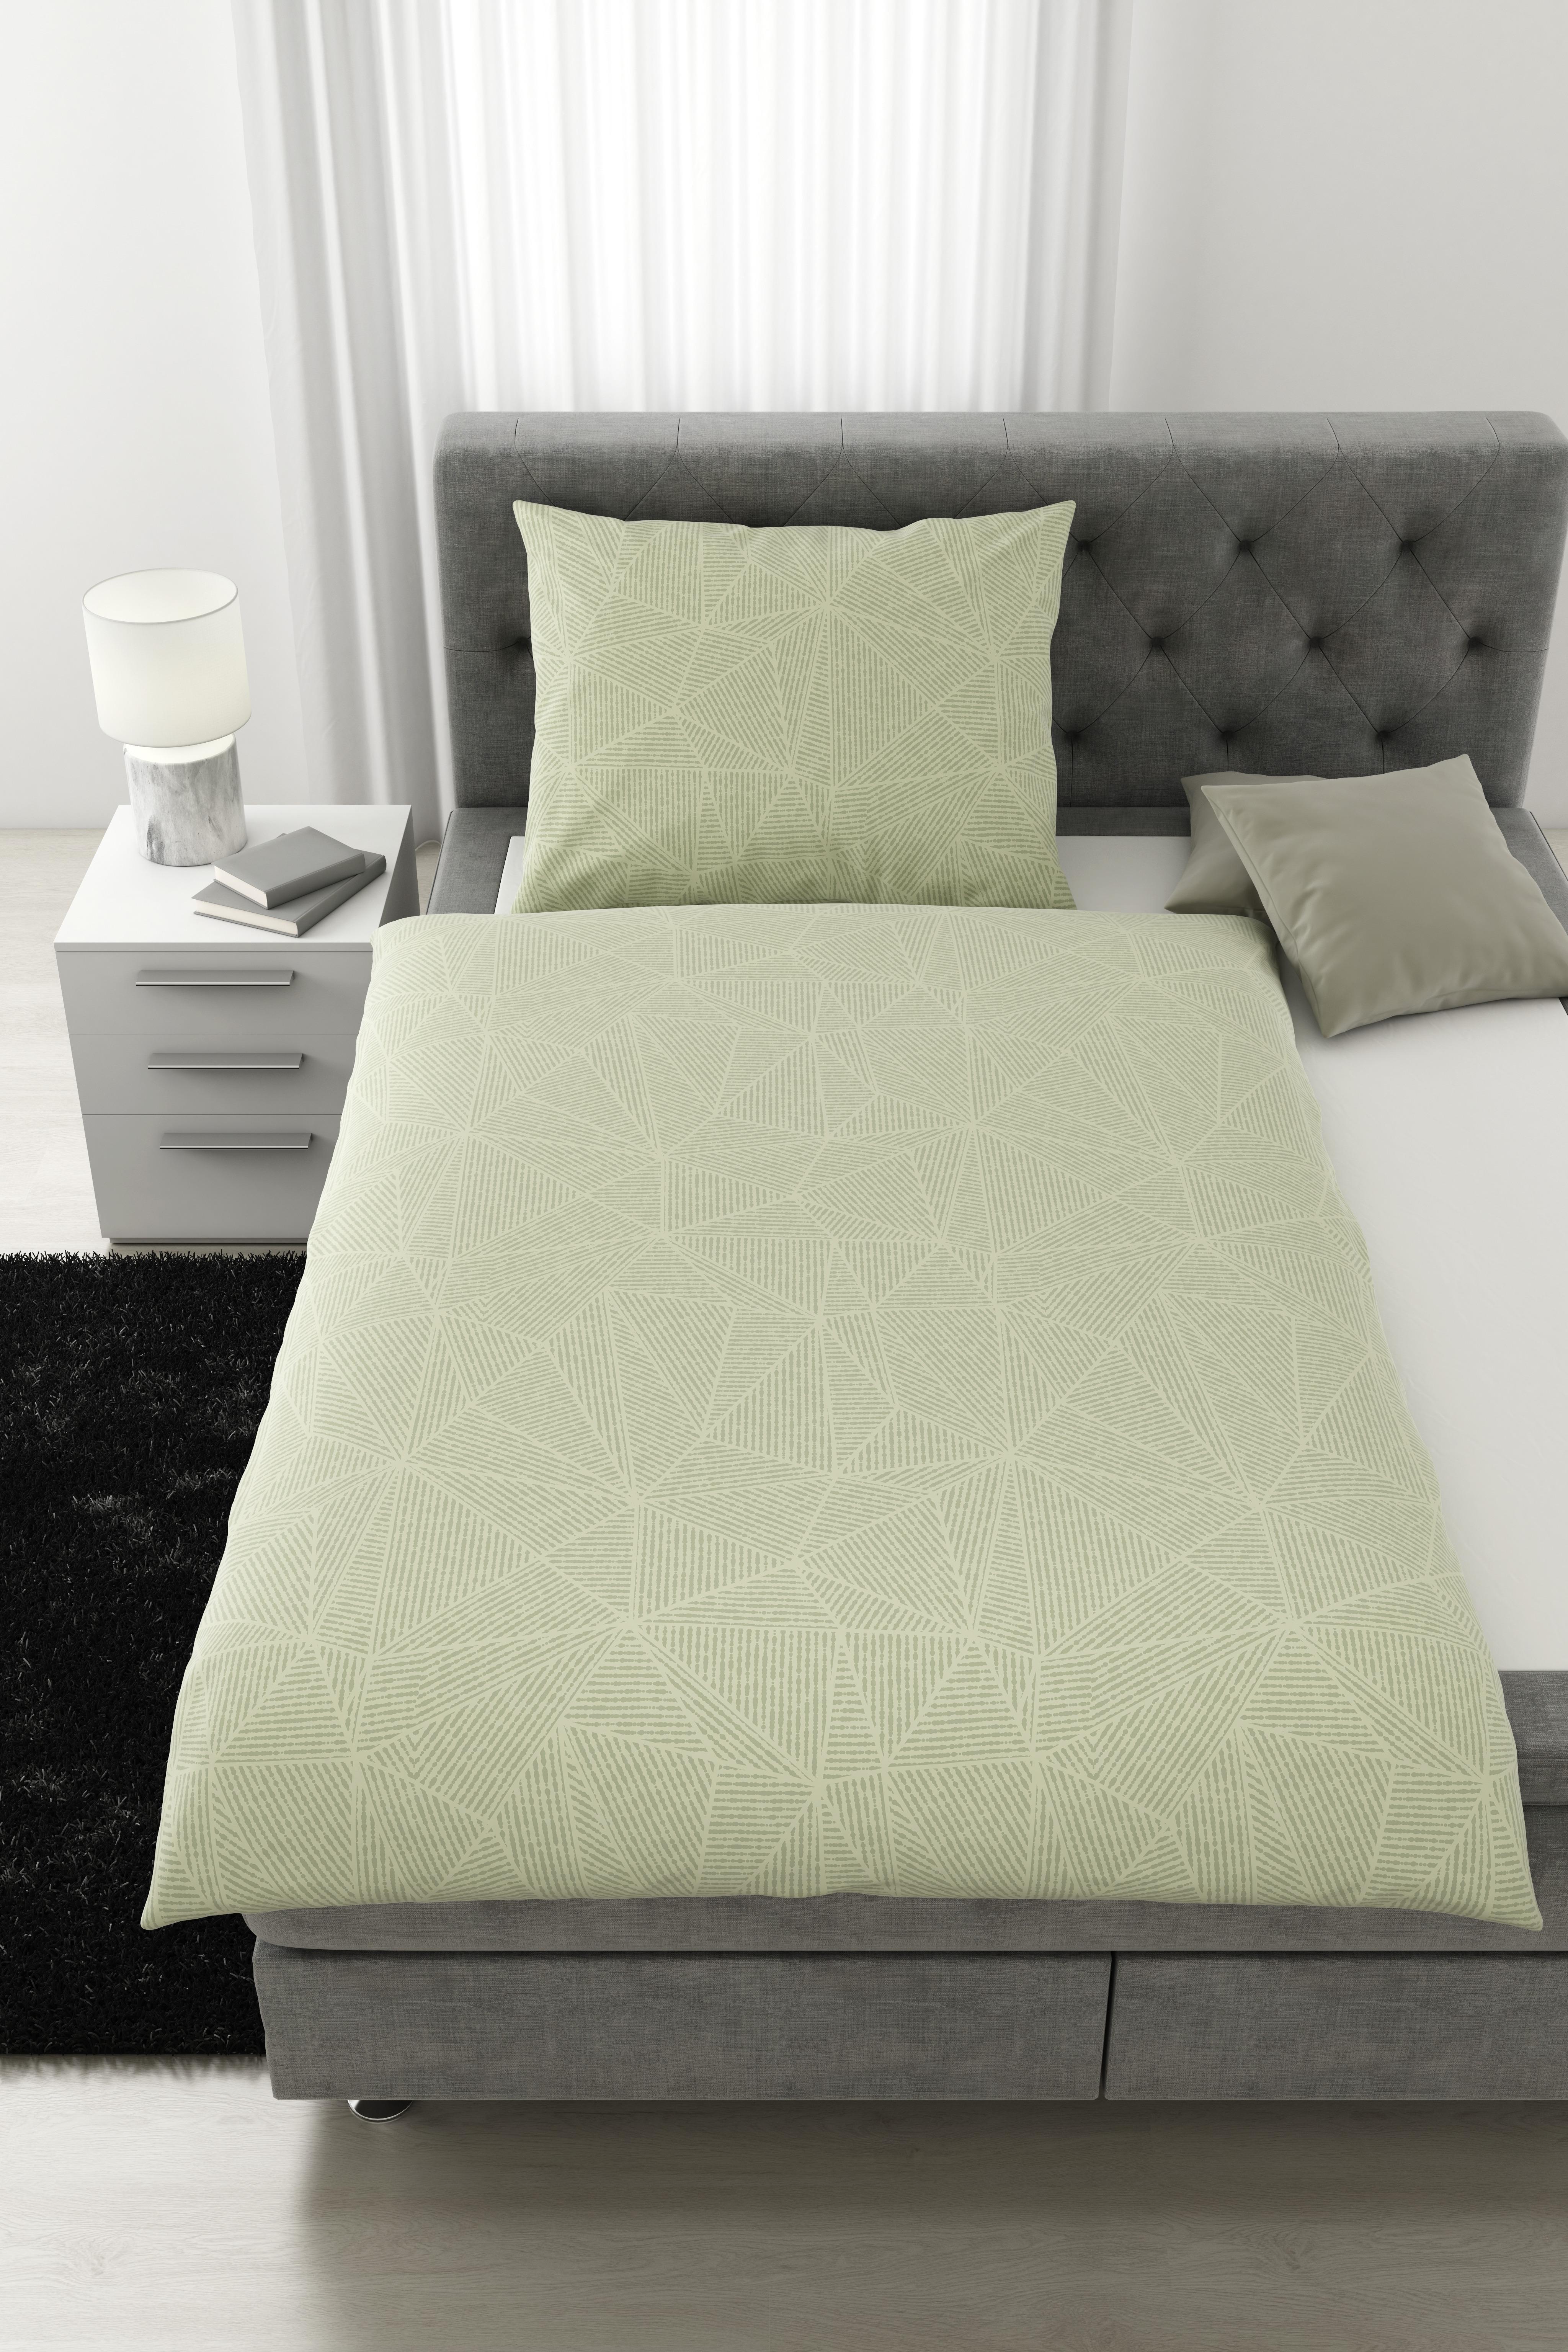 Povlečení Alex Design, 140/200cm - světle zelená, Moderní, textil (140/200cm) - Premium Living